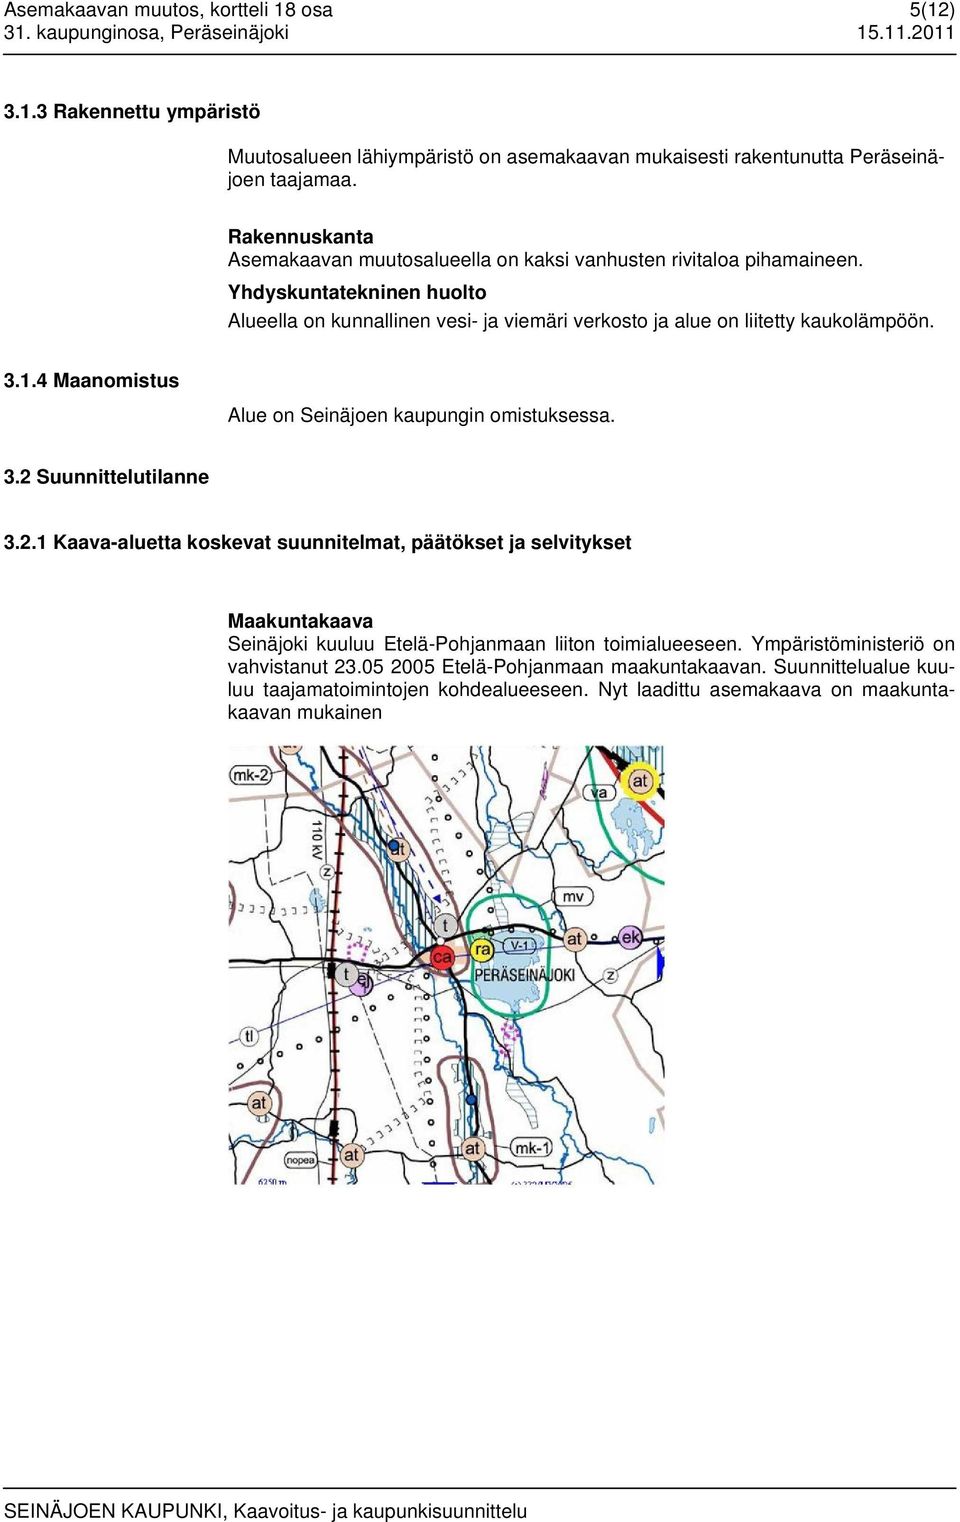 4 Maanomistus Alue on Seinäjoen kaupungin omistuksessa. 3.2 Suunnittelutilanne 3.2.1 Kaava-aluetta koskevat suunnitelmat, päätökset ja selvitykset Maakuntakaava Seinäjoki kuuluu Etelä-Pohjanmaan liiton toimialueeseen.